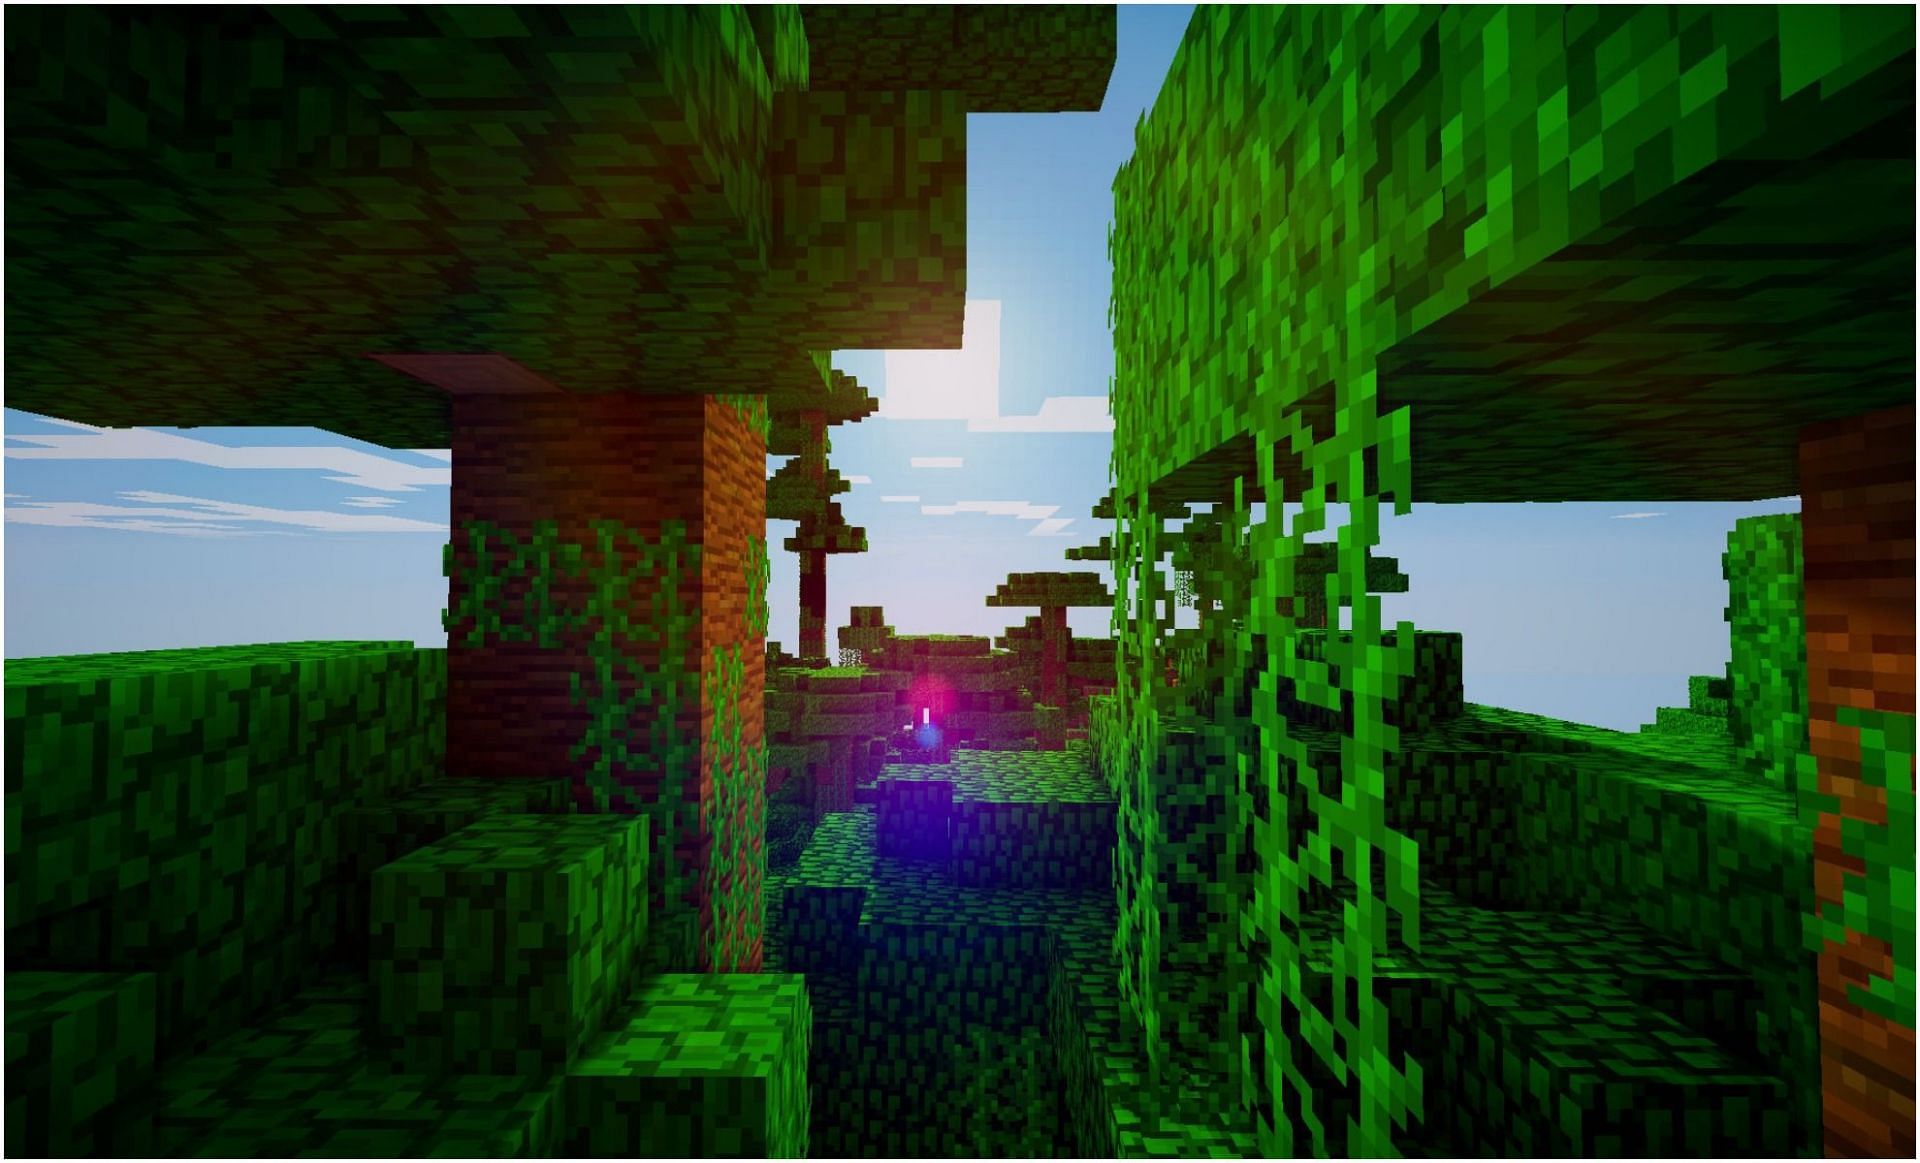 Vines in Minecraft (Image via WallaperTip/Minecraft)